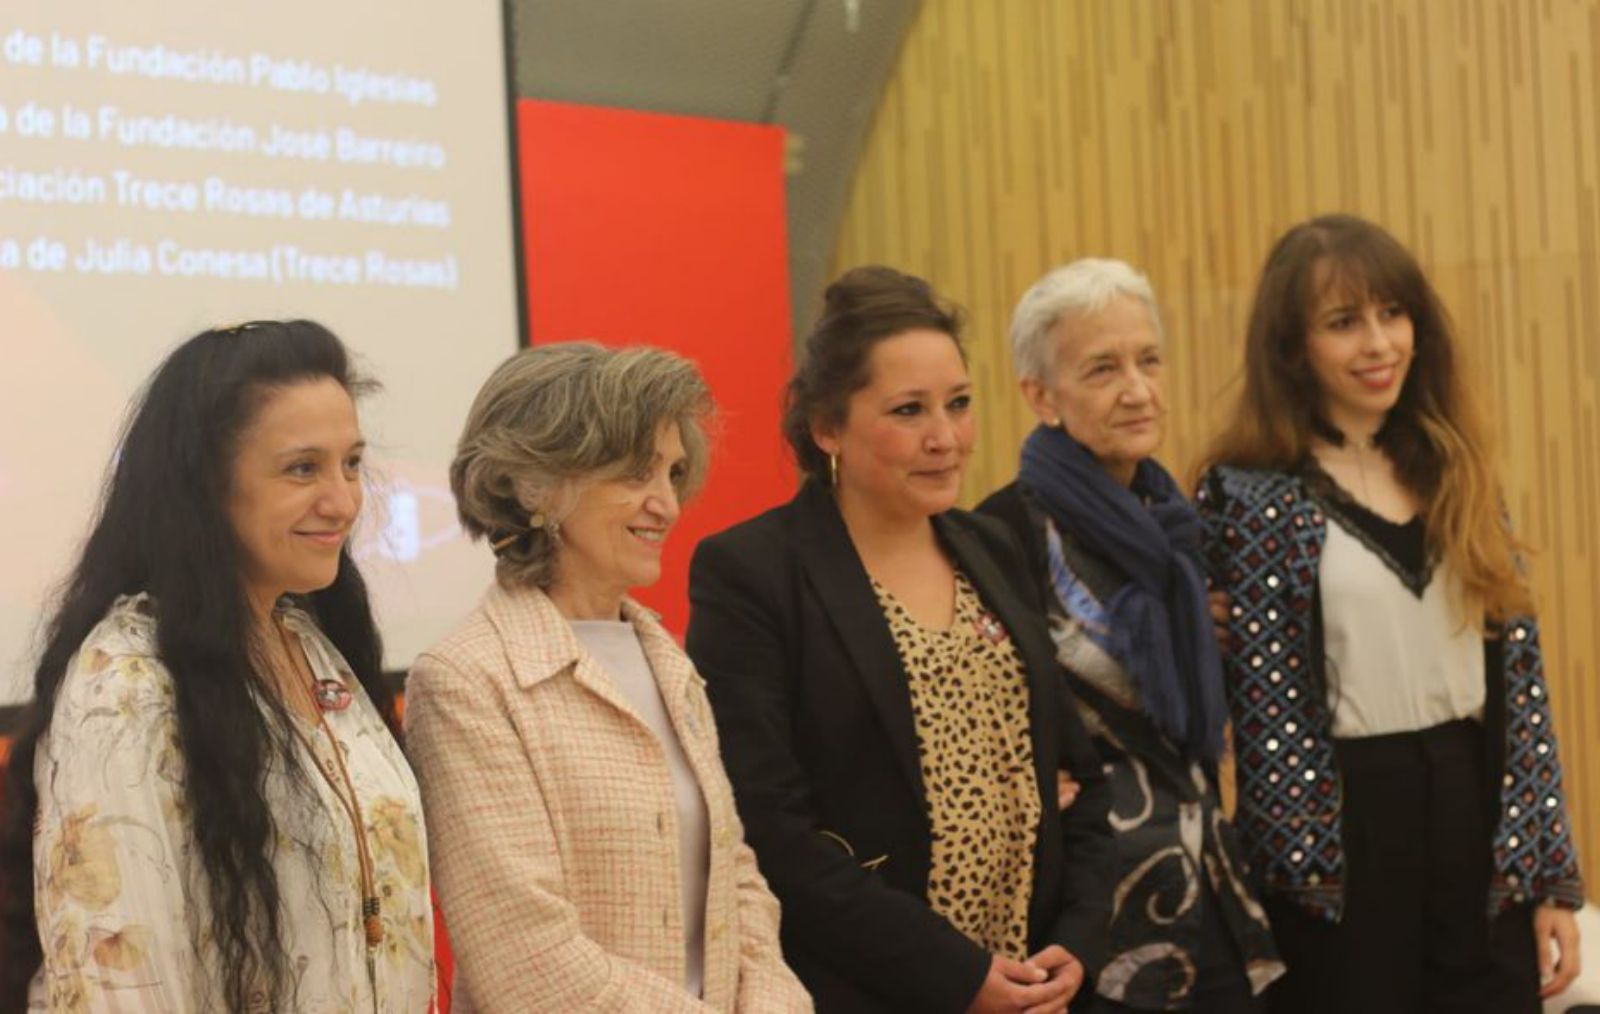 Por la izquierda, Constanza Paje, Luisa Carcedo, Verónica Noval, Carmen Suárez y Carolina Lasheras, en Oviedo.